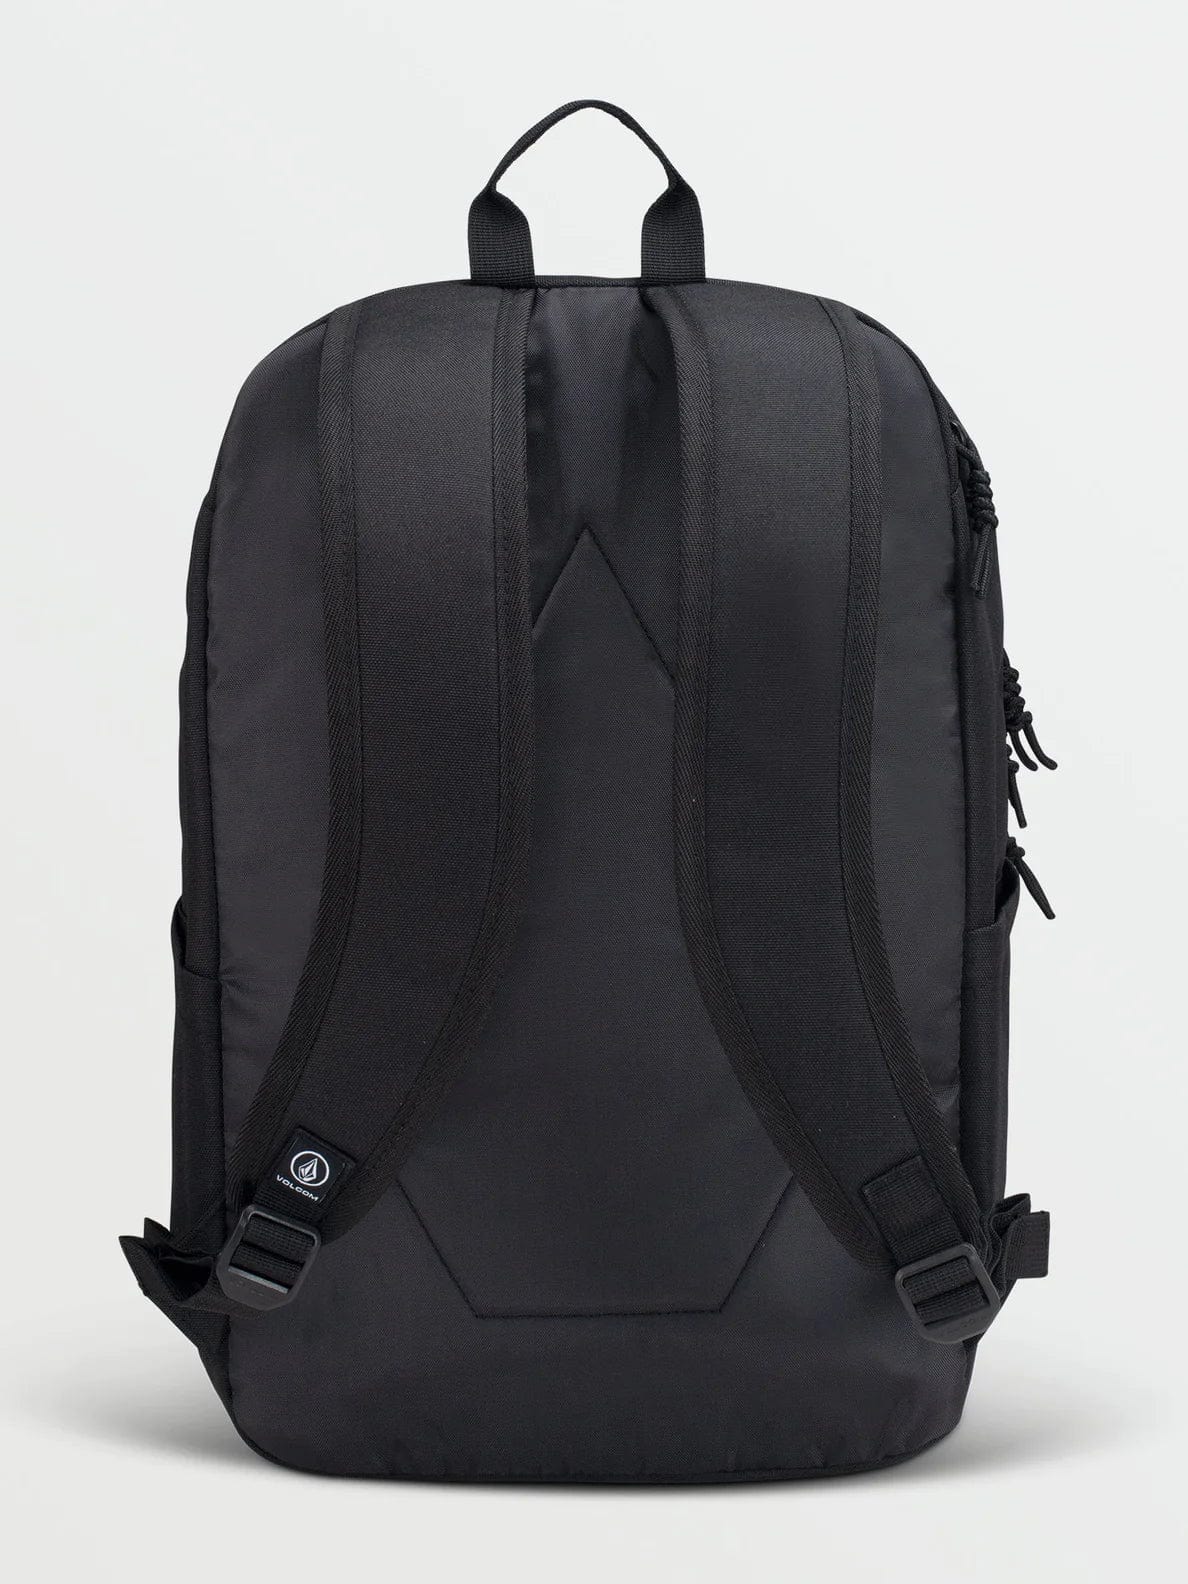 Volcom Roamer Backpack (Black) VOLCOM